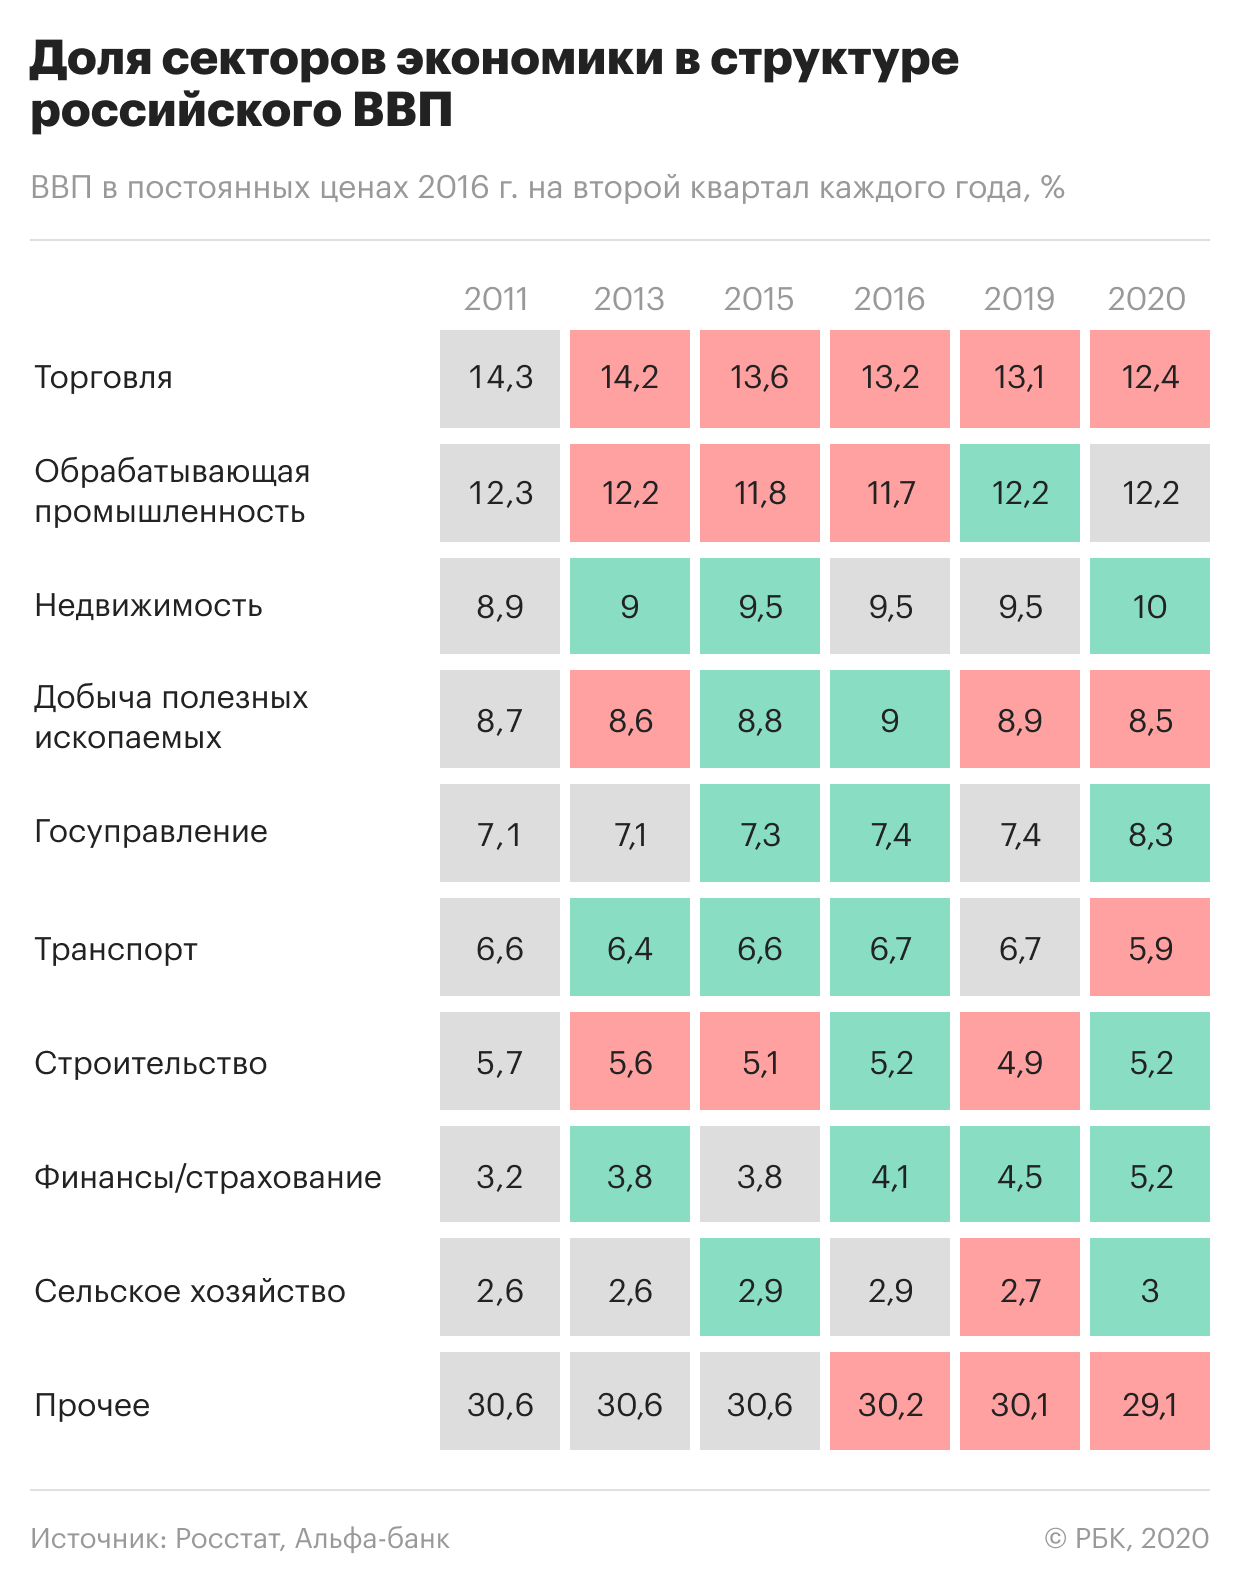 Экономисты оценили потенциал восстановления реальных доходов россиян